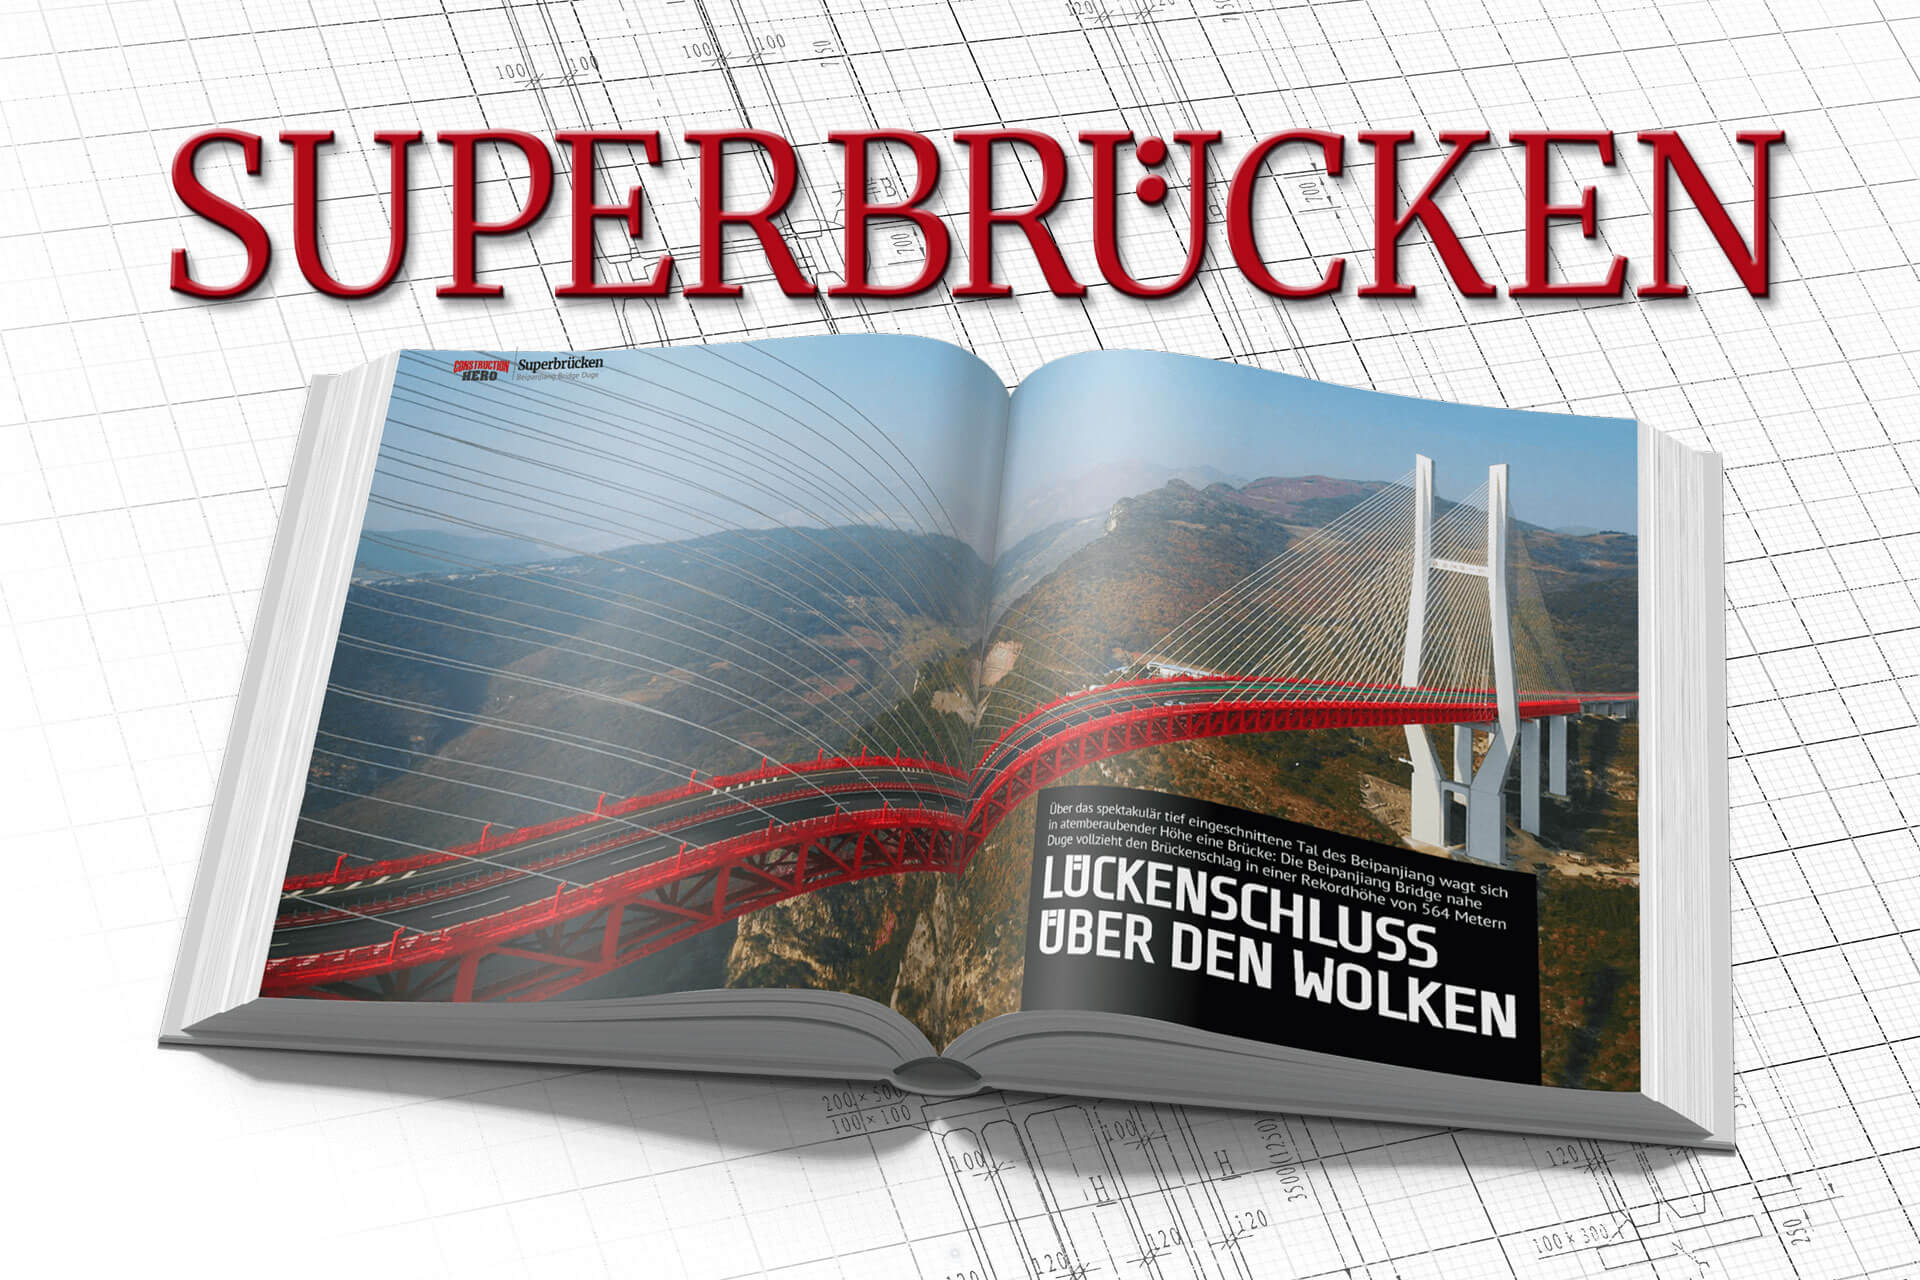 Das Buch Superbrücken aufgeschlagen